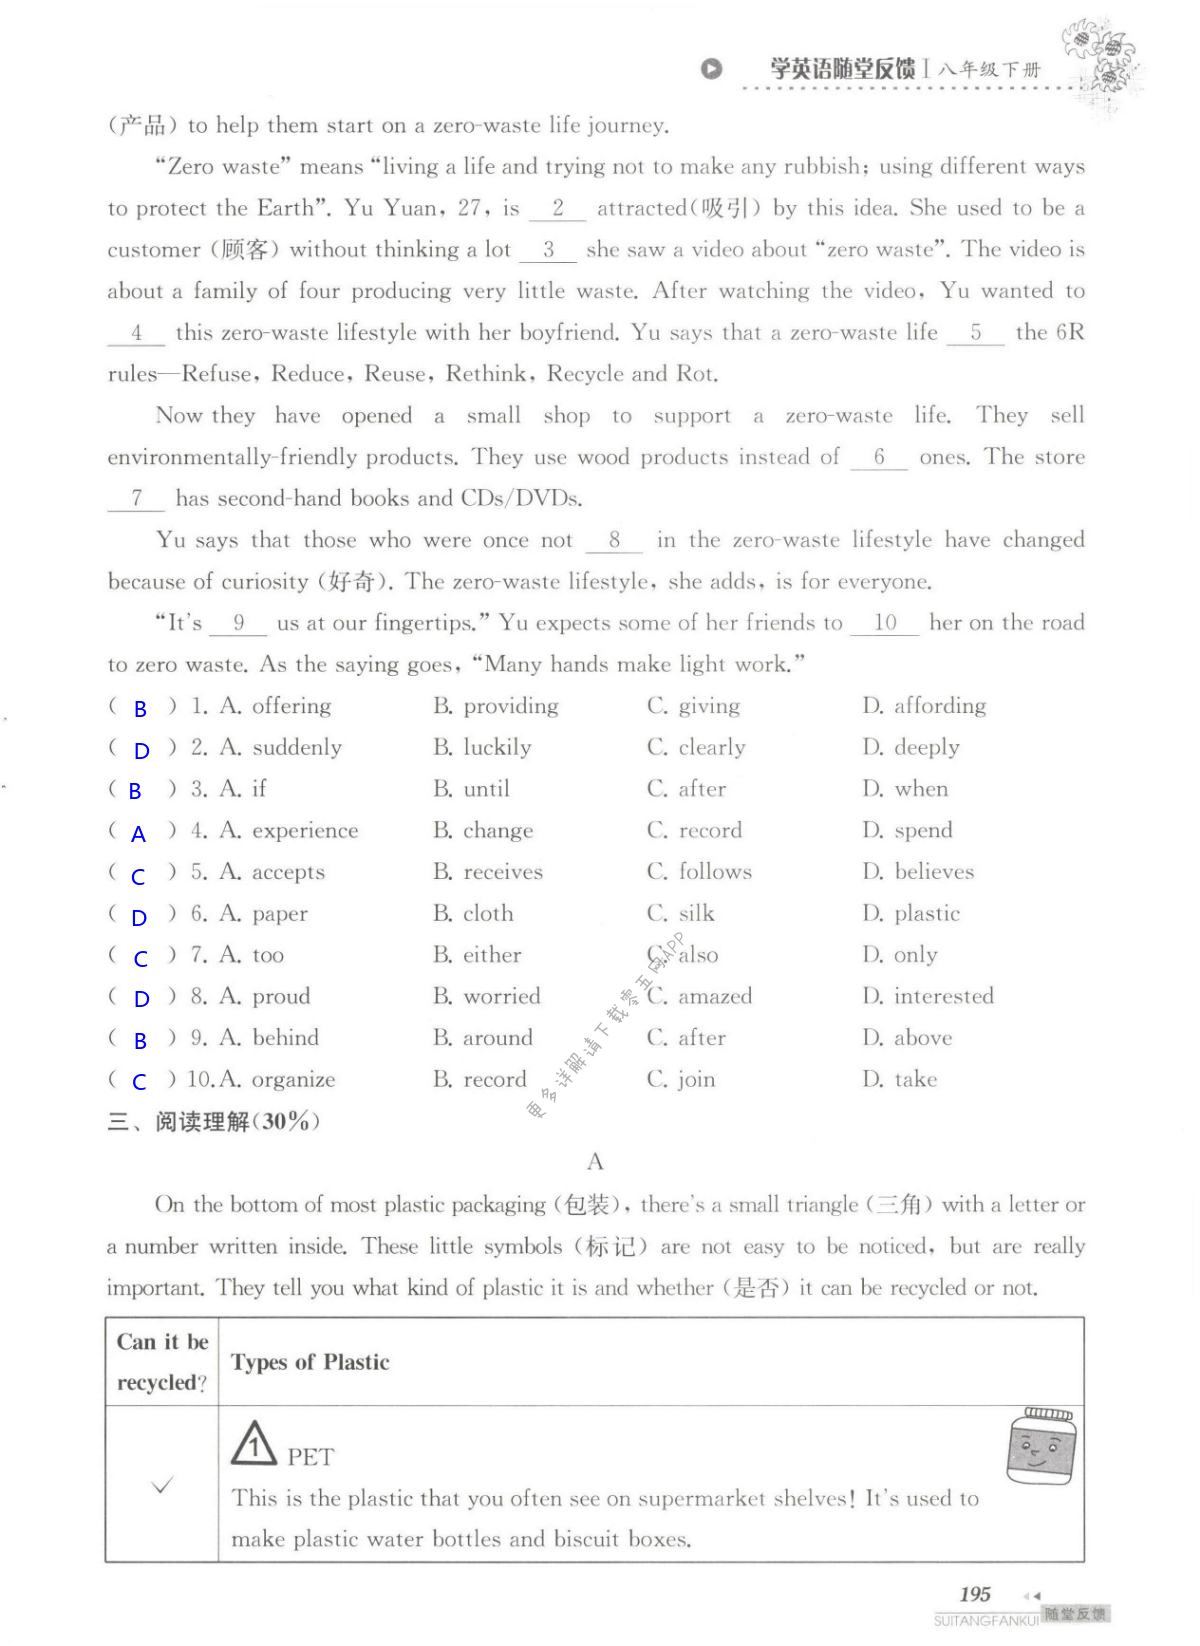 单元综合测试卷  Test for Unit 8 of 8B - 第195页